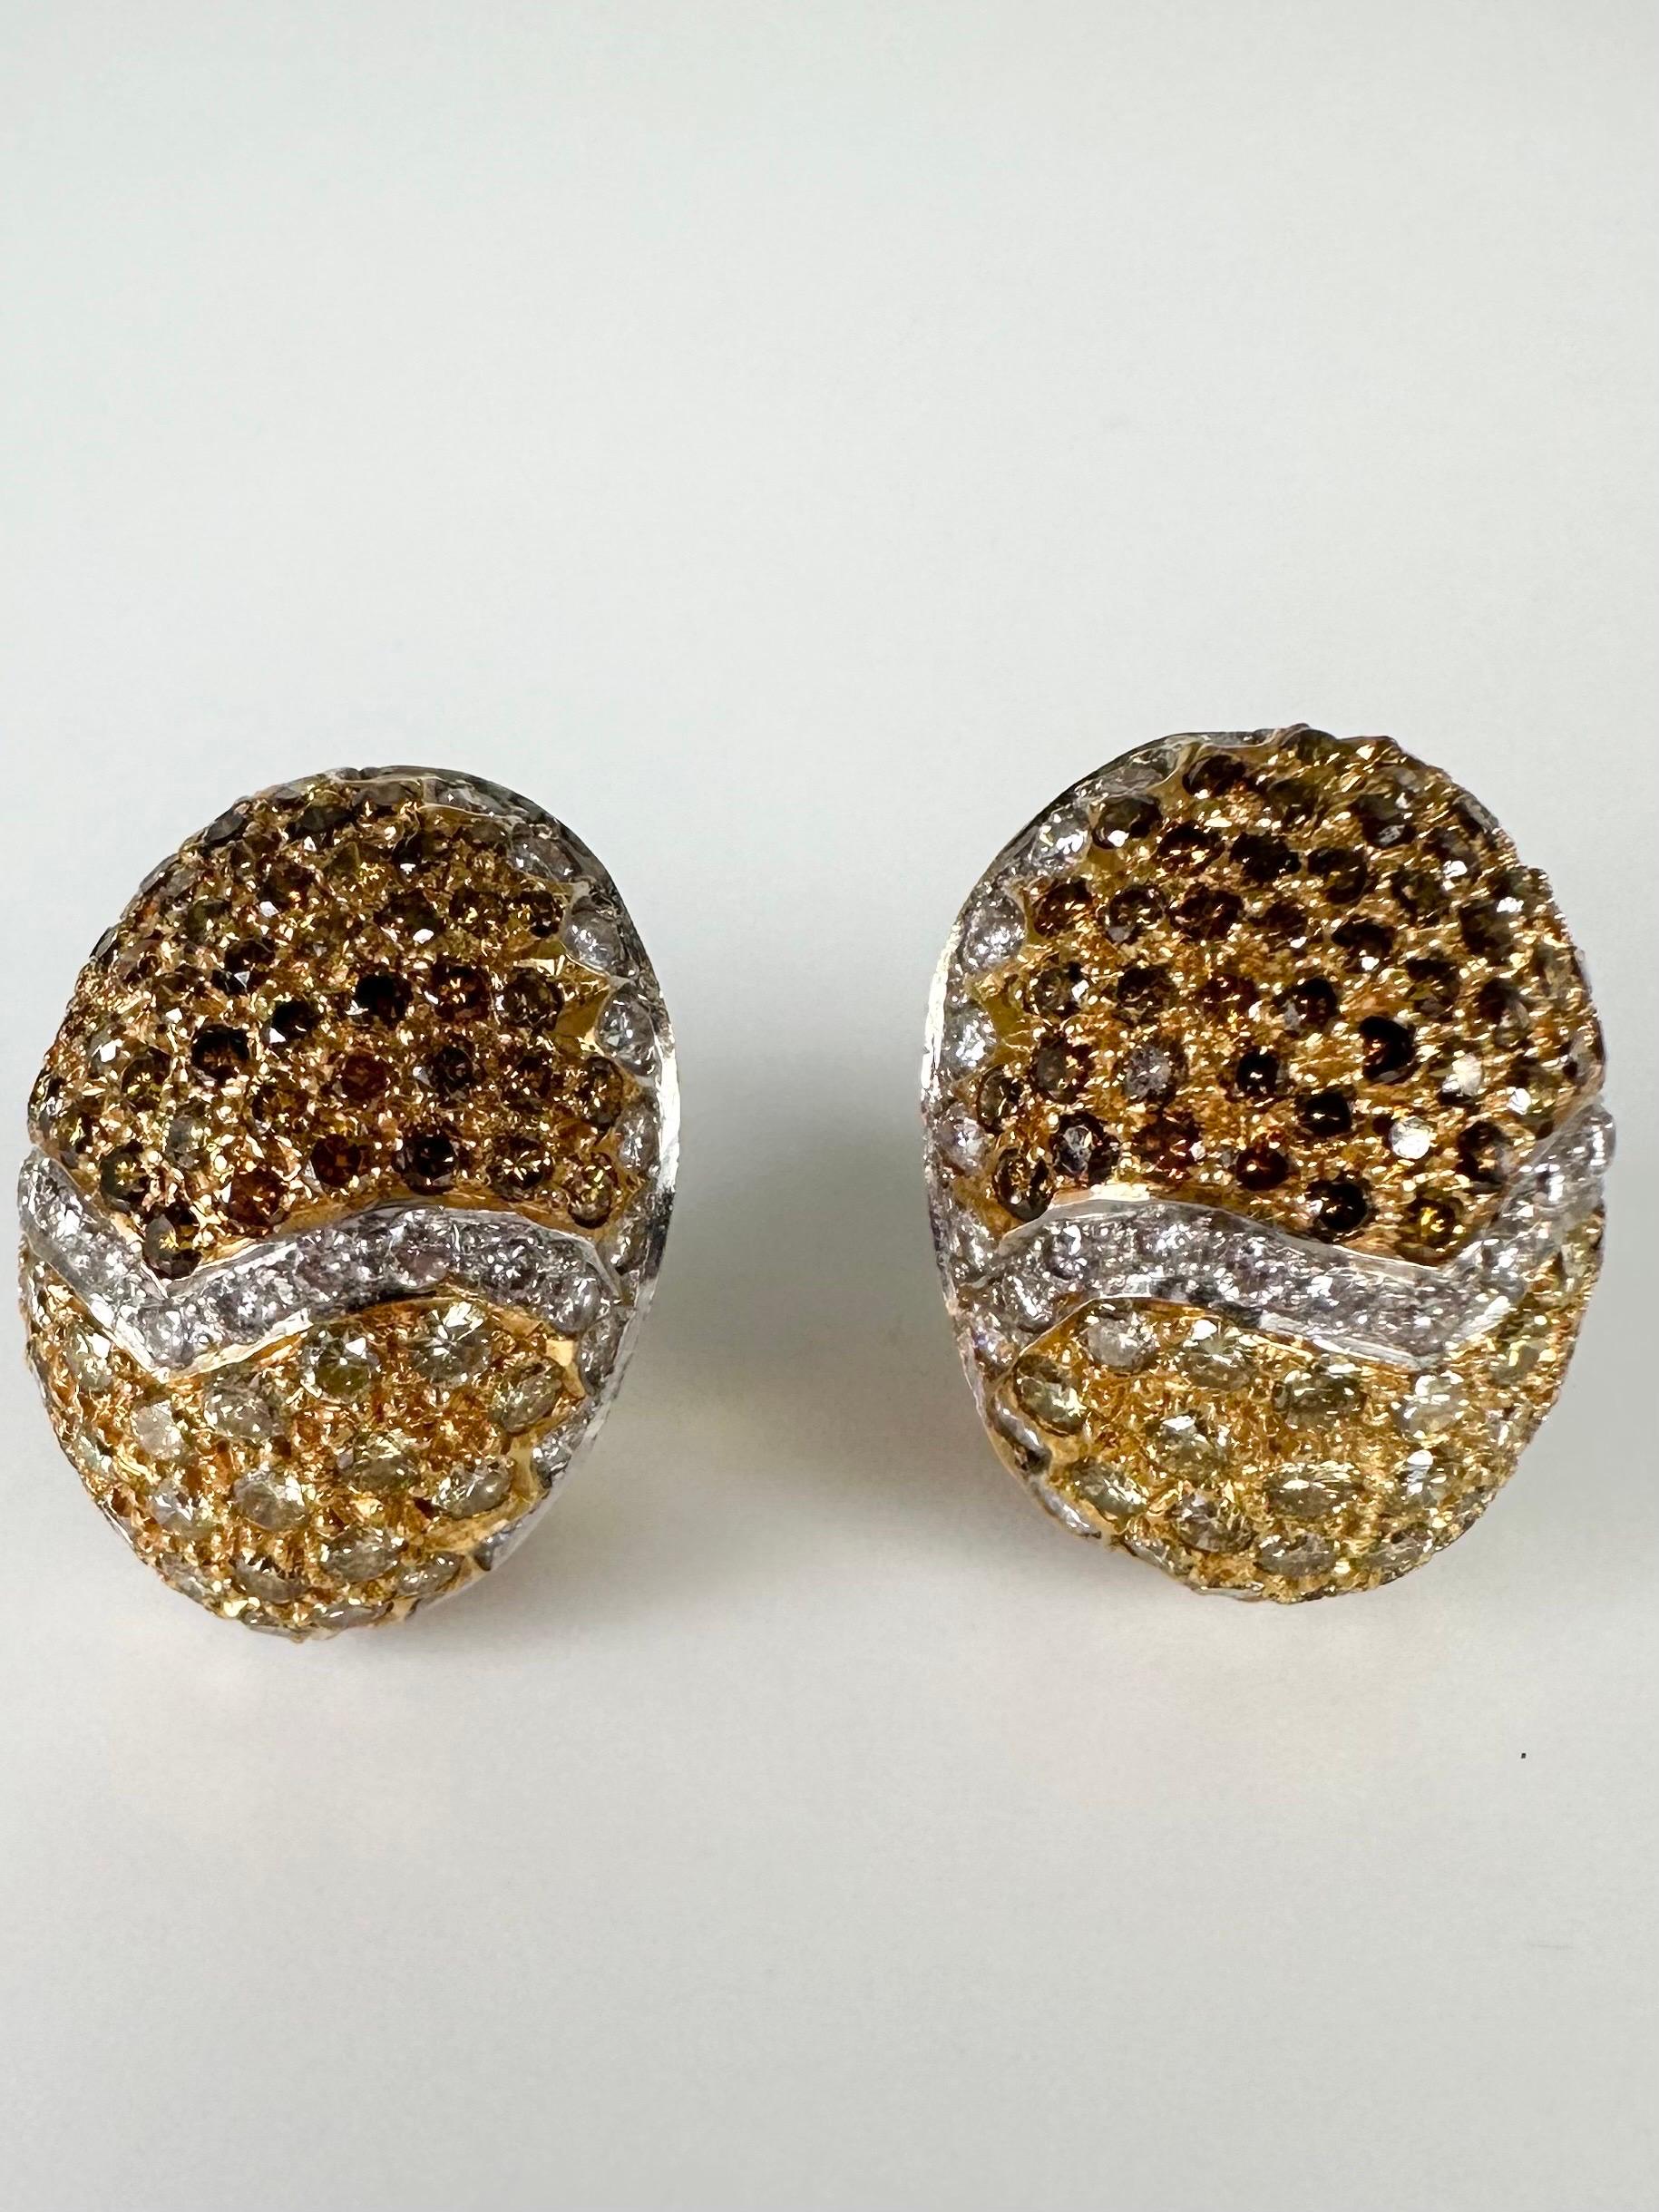 Osterei-Diamant-Ohrringe mit braunen und gelben Diamanten in 18 Kt. Gelbgold. Diese Ohrringe sehen an den Ohren toll aus und haben die richtige Größe!

GOLD: 18KT Gold
NATÜRLICHE(R) DIAMANT(E)
Klarheit/Farbe: VS/F
Carat:3.74ct
Schliff:Runder